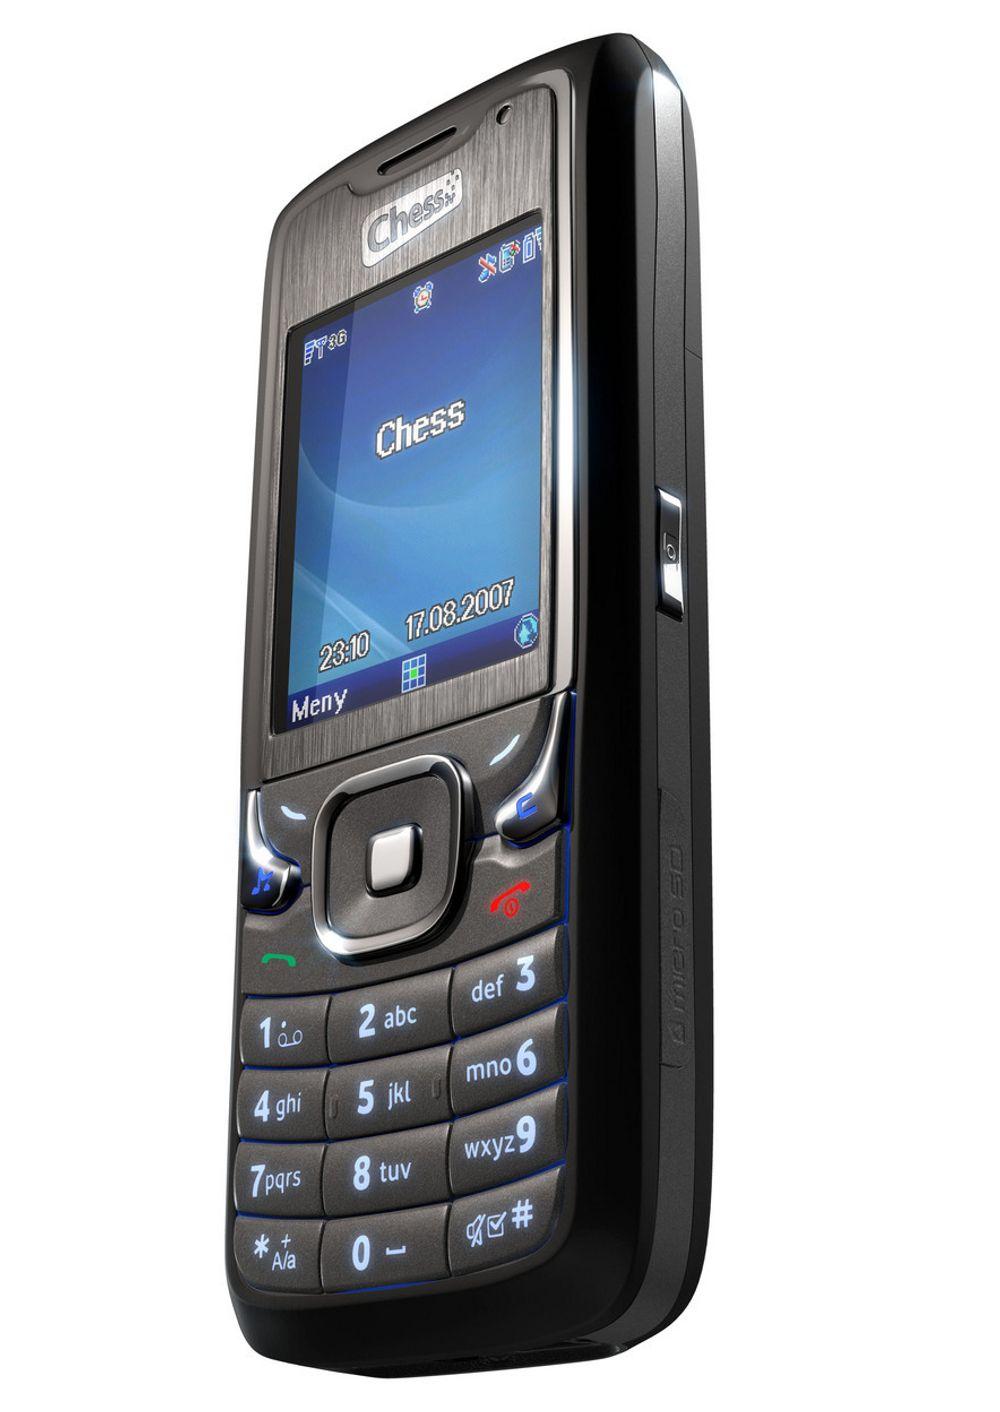 Chess X-one mobiltelefon er en full 3 G-telefon med 1,3 megapixelkamera og MP3-spiller. Beregnet på massemarkedet og produsert i Kina av Huawei Technologies.